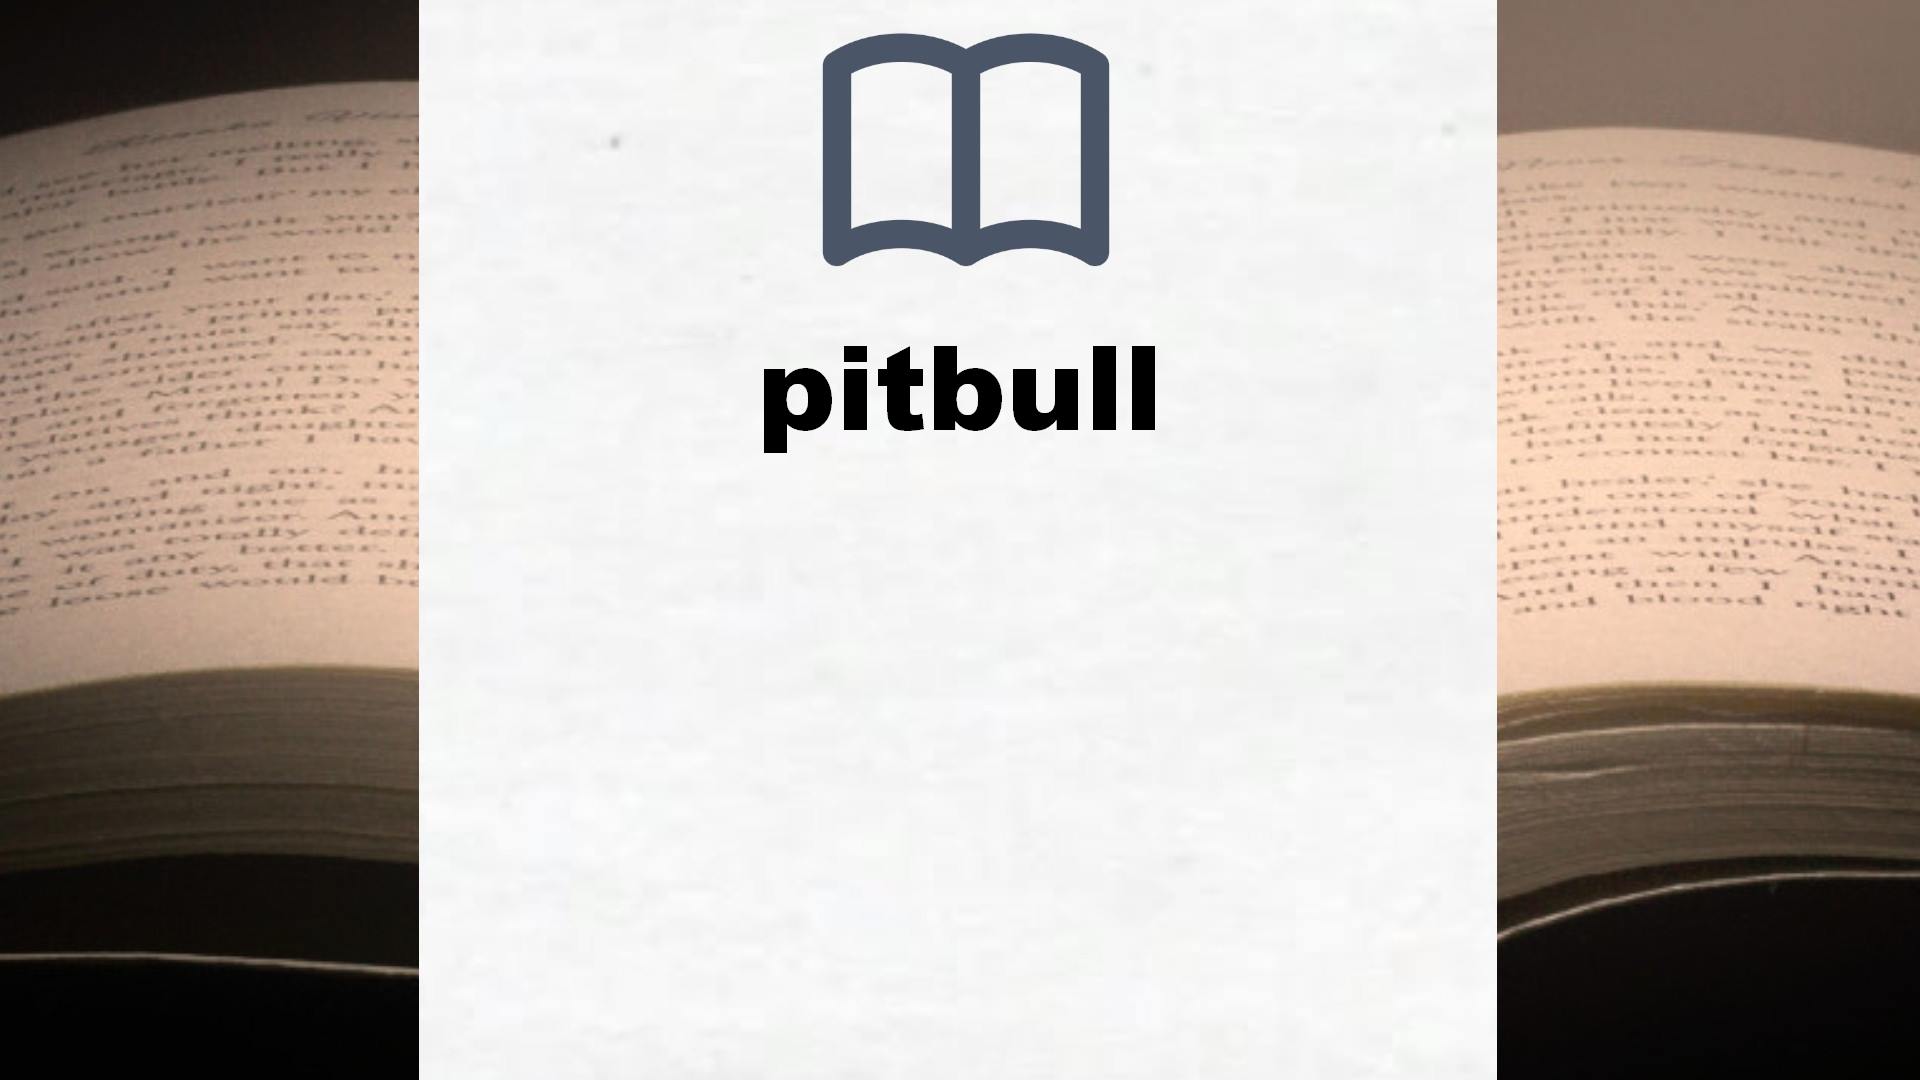 Libros sobre pitbull